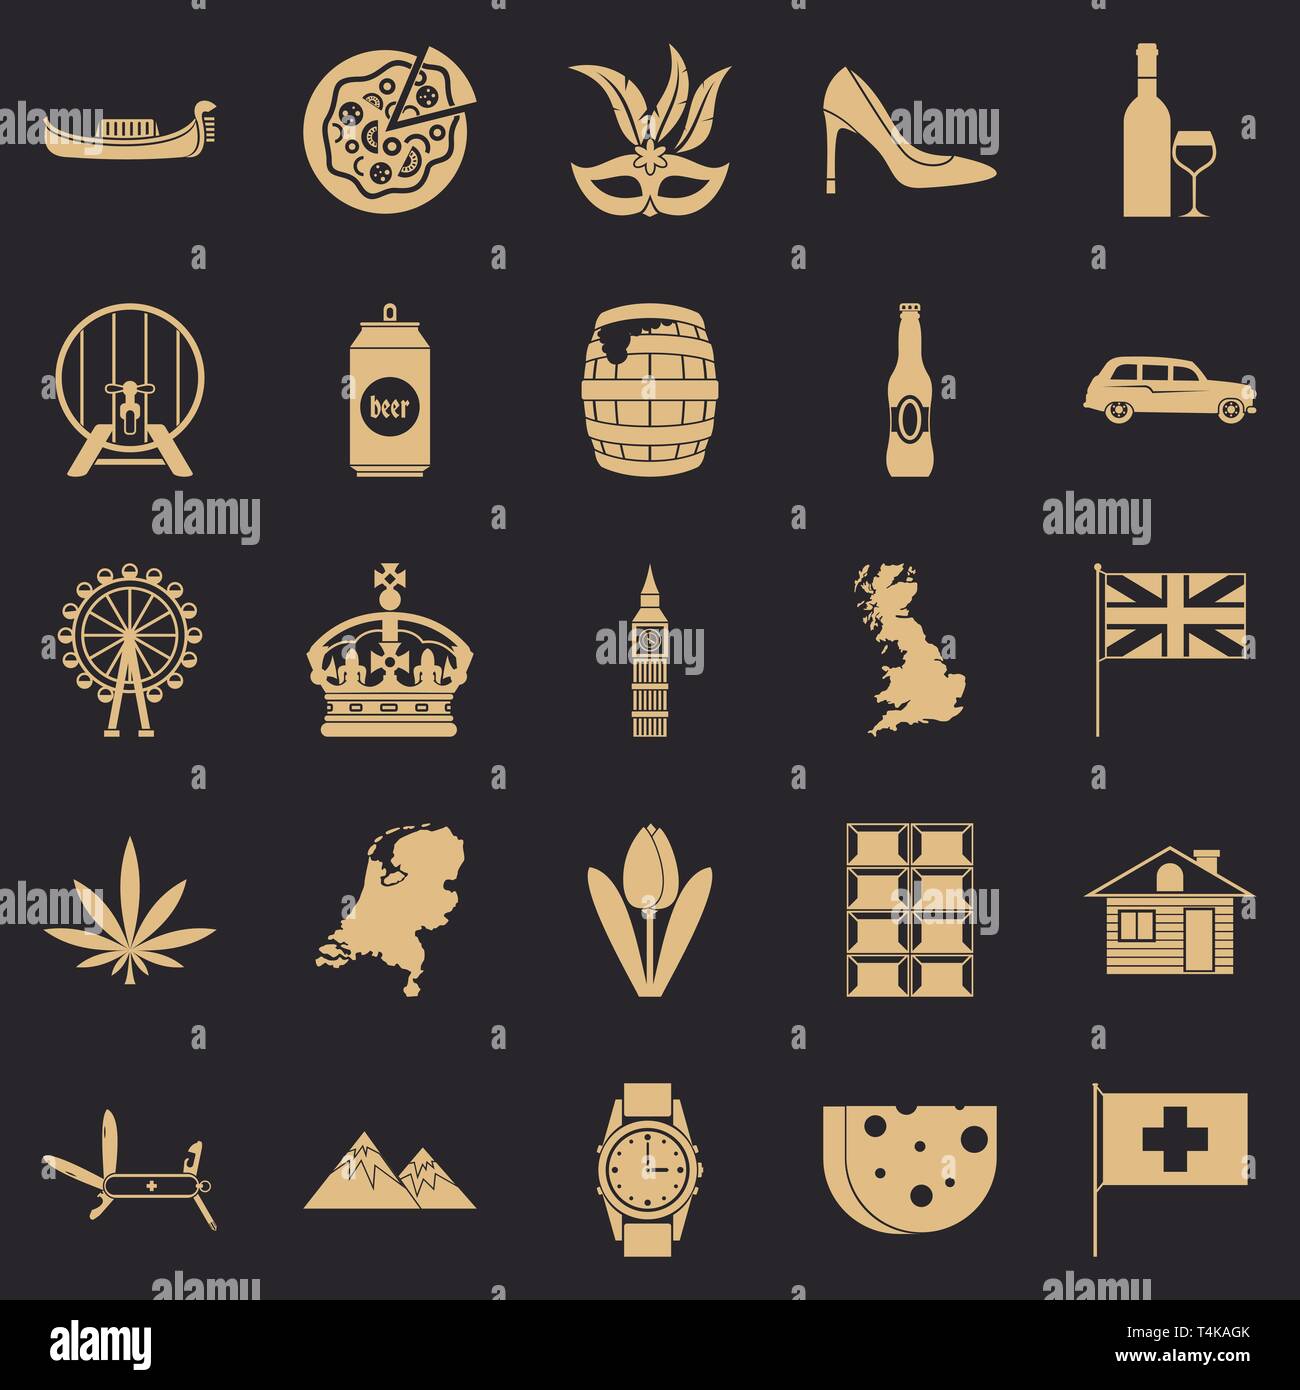 La famille royale, le style simple icons set Illustration de Vecteur